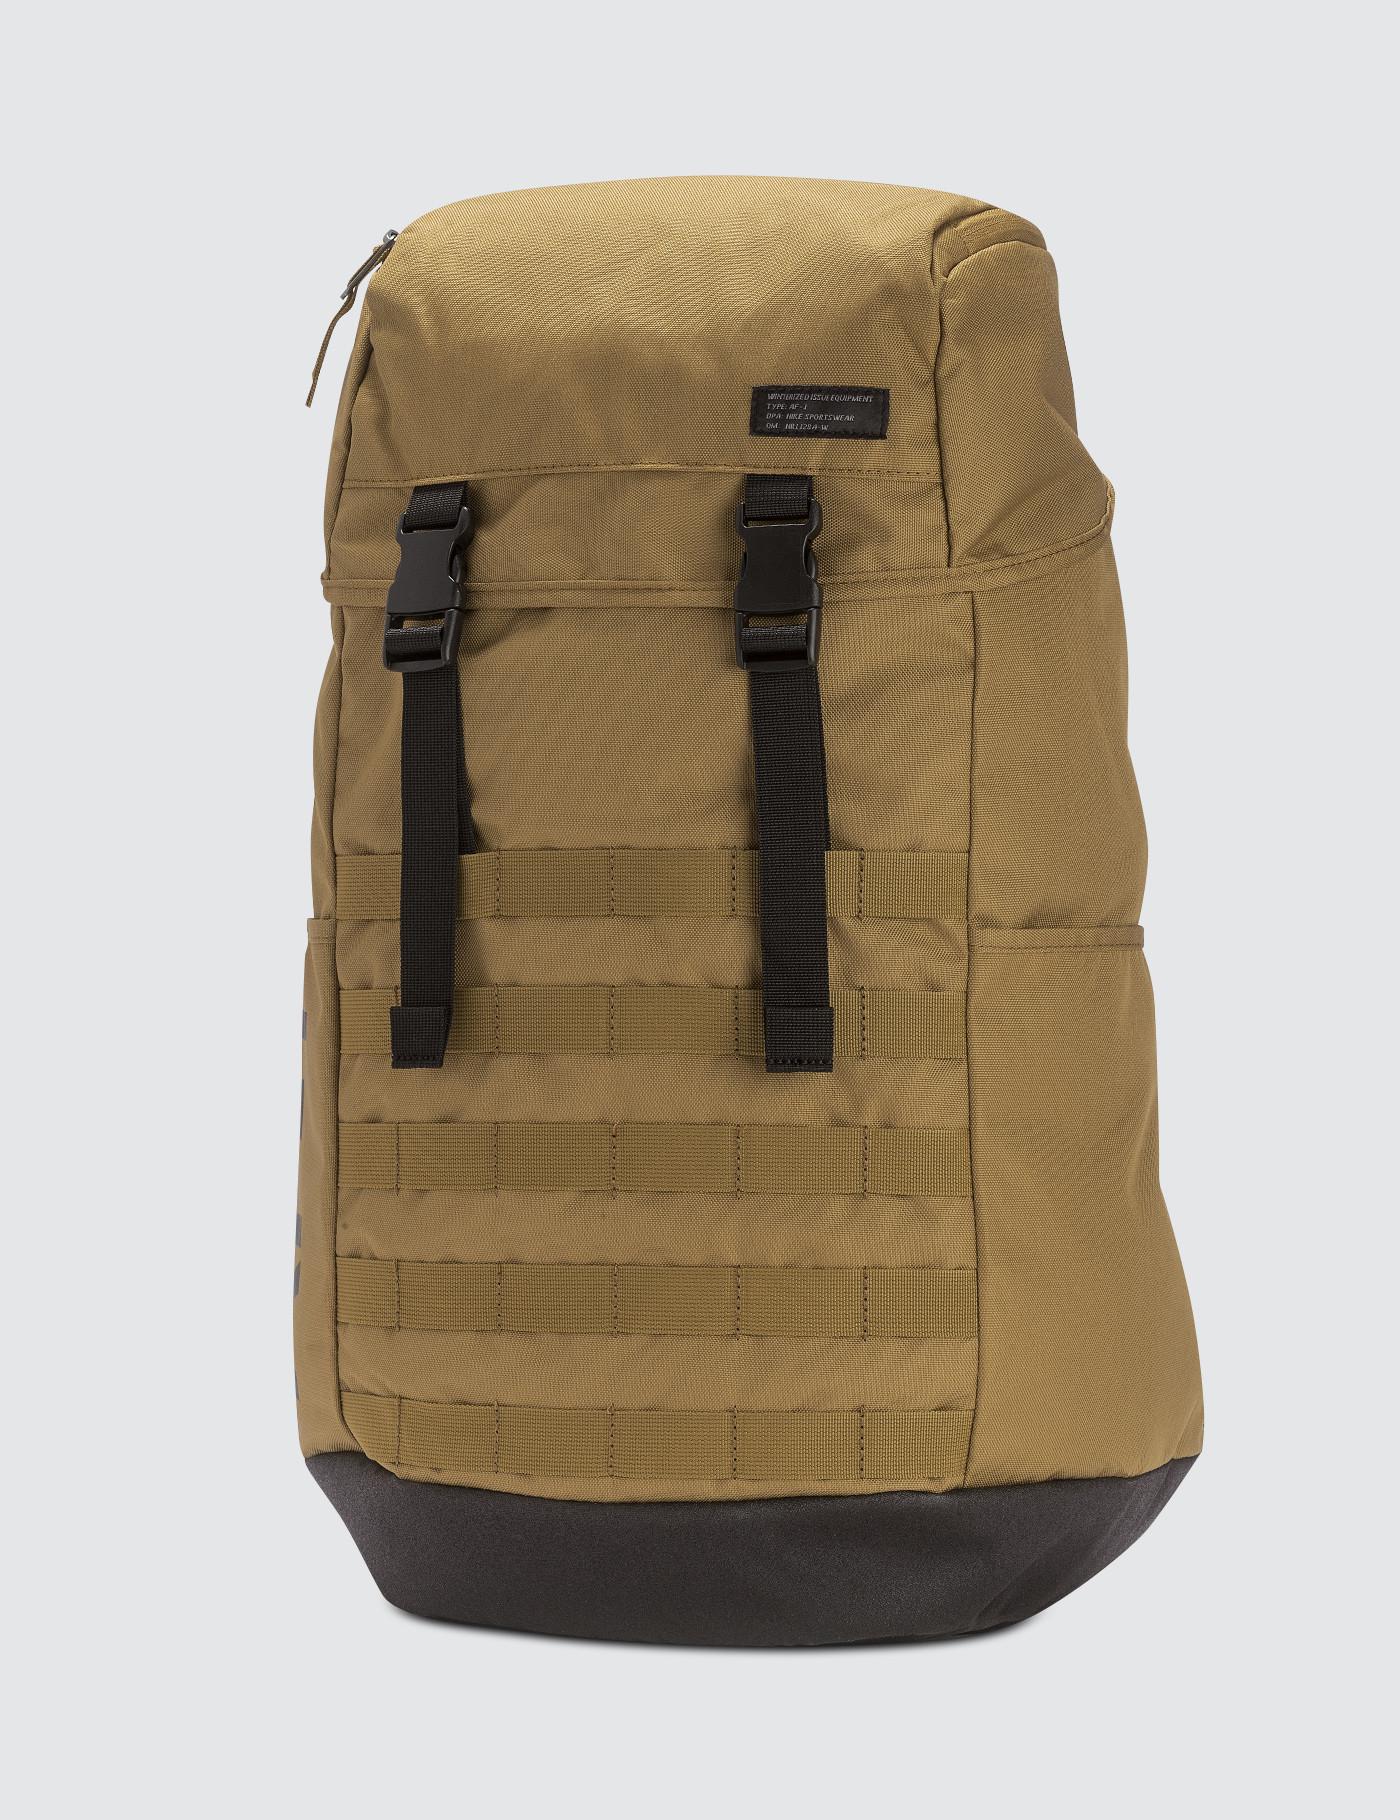 Nike Sportswear Af1 Backpack (brown) for Men - Lyst